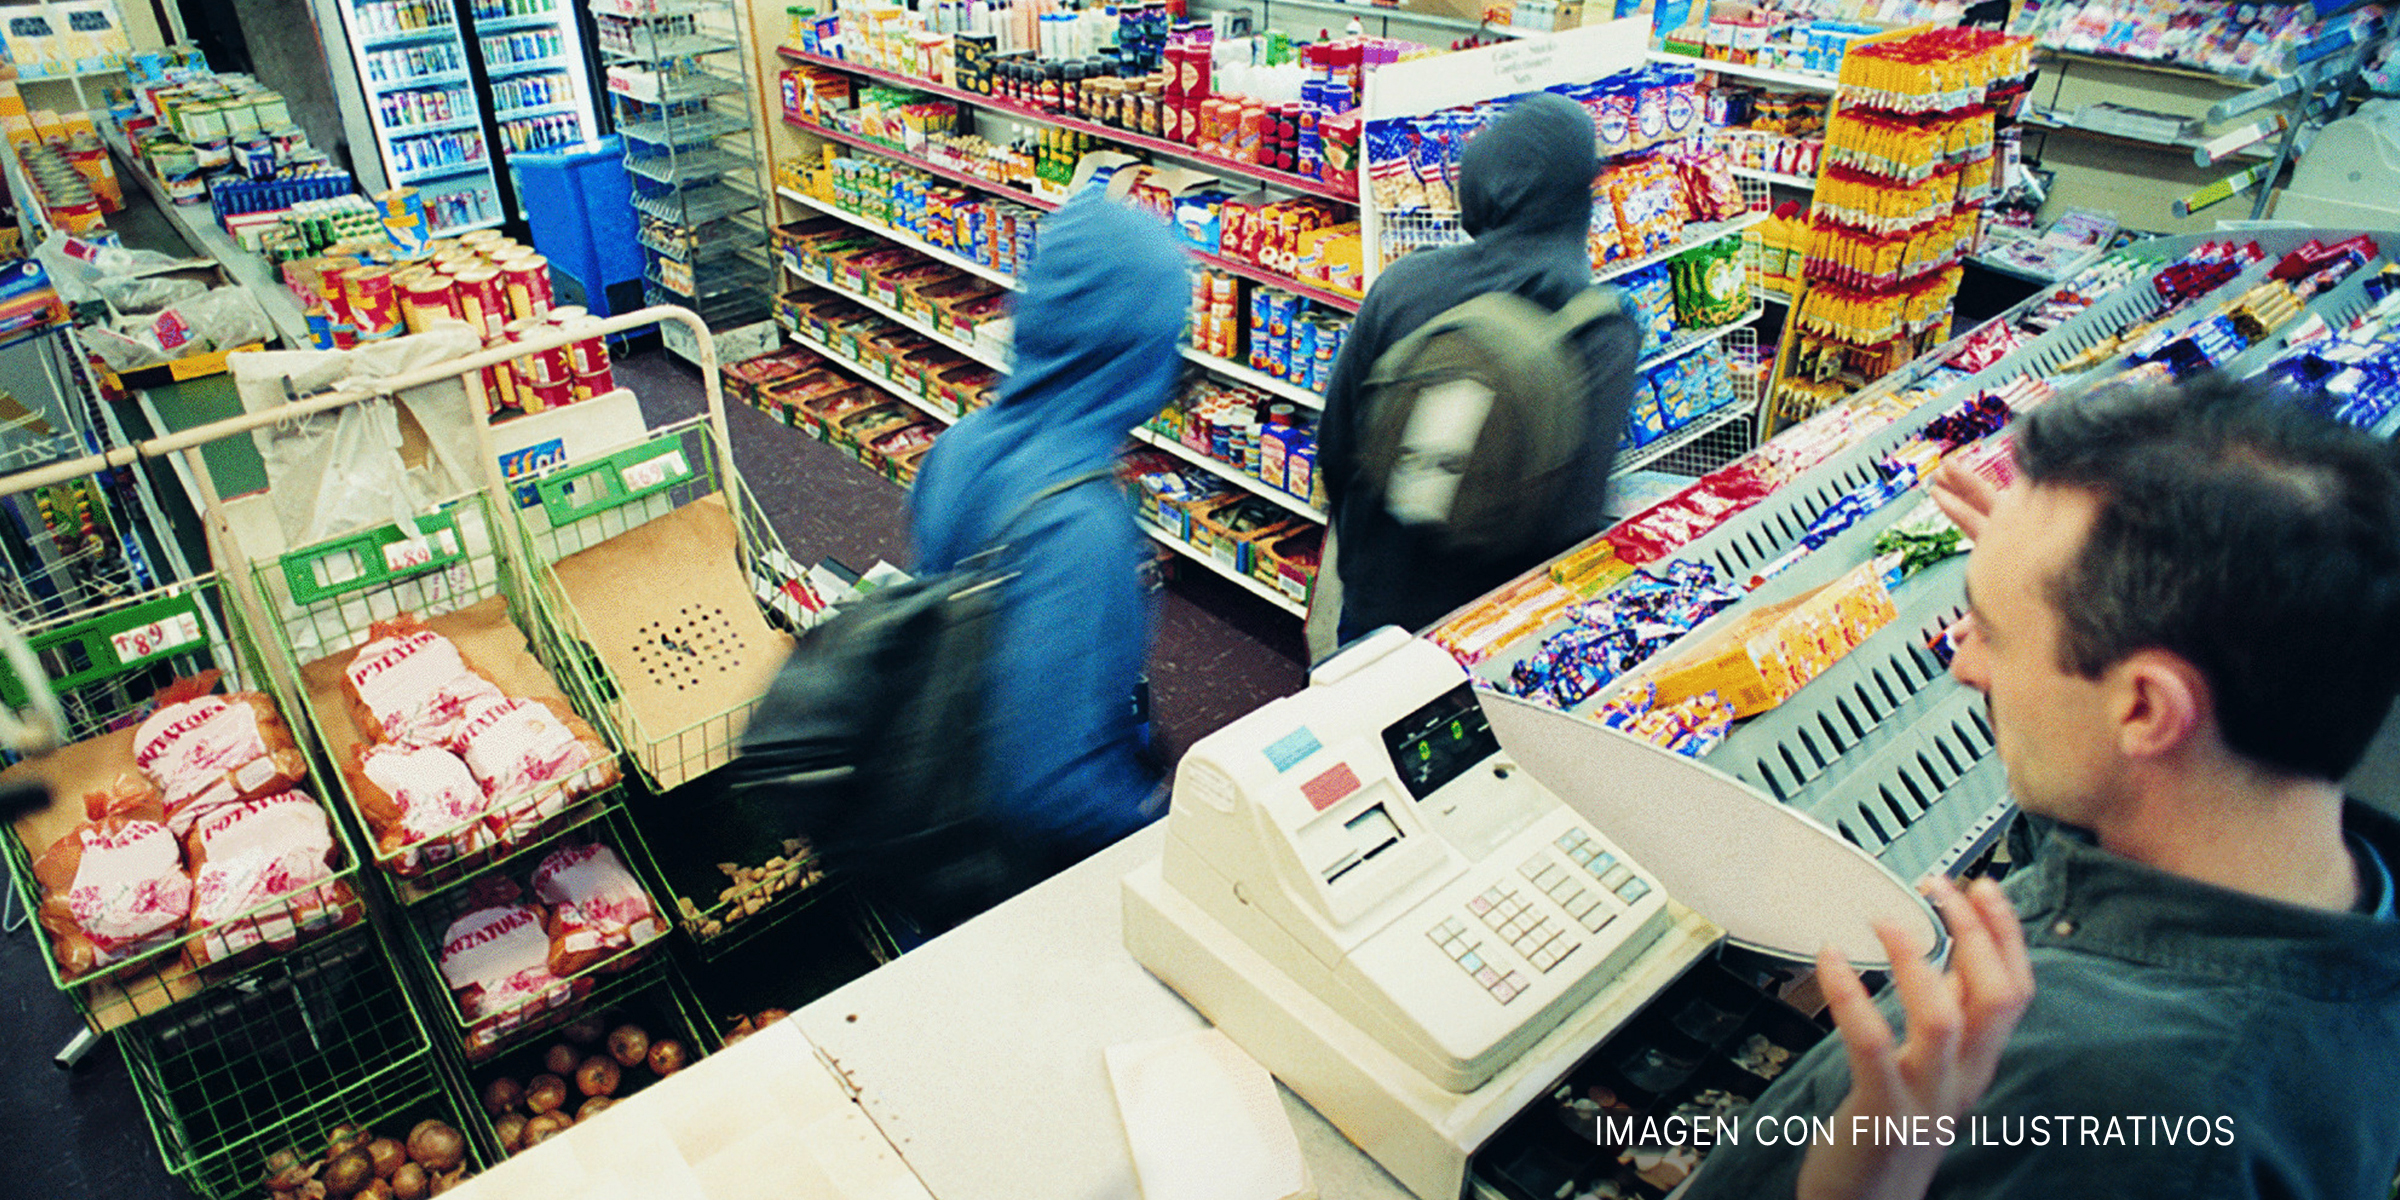 Encapuchados robando en una tienda. | Foto: Shutterstock